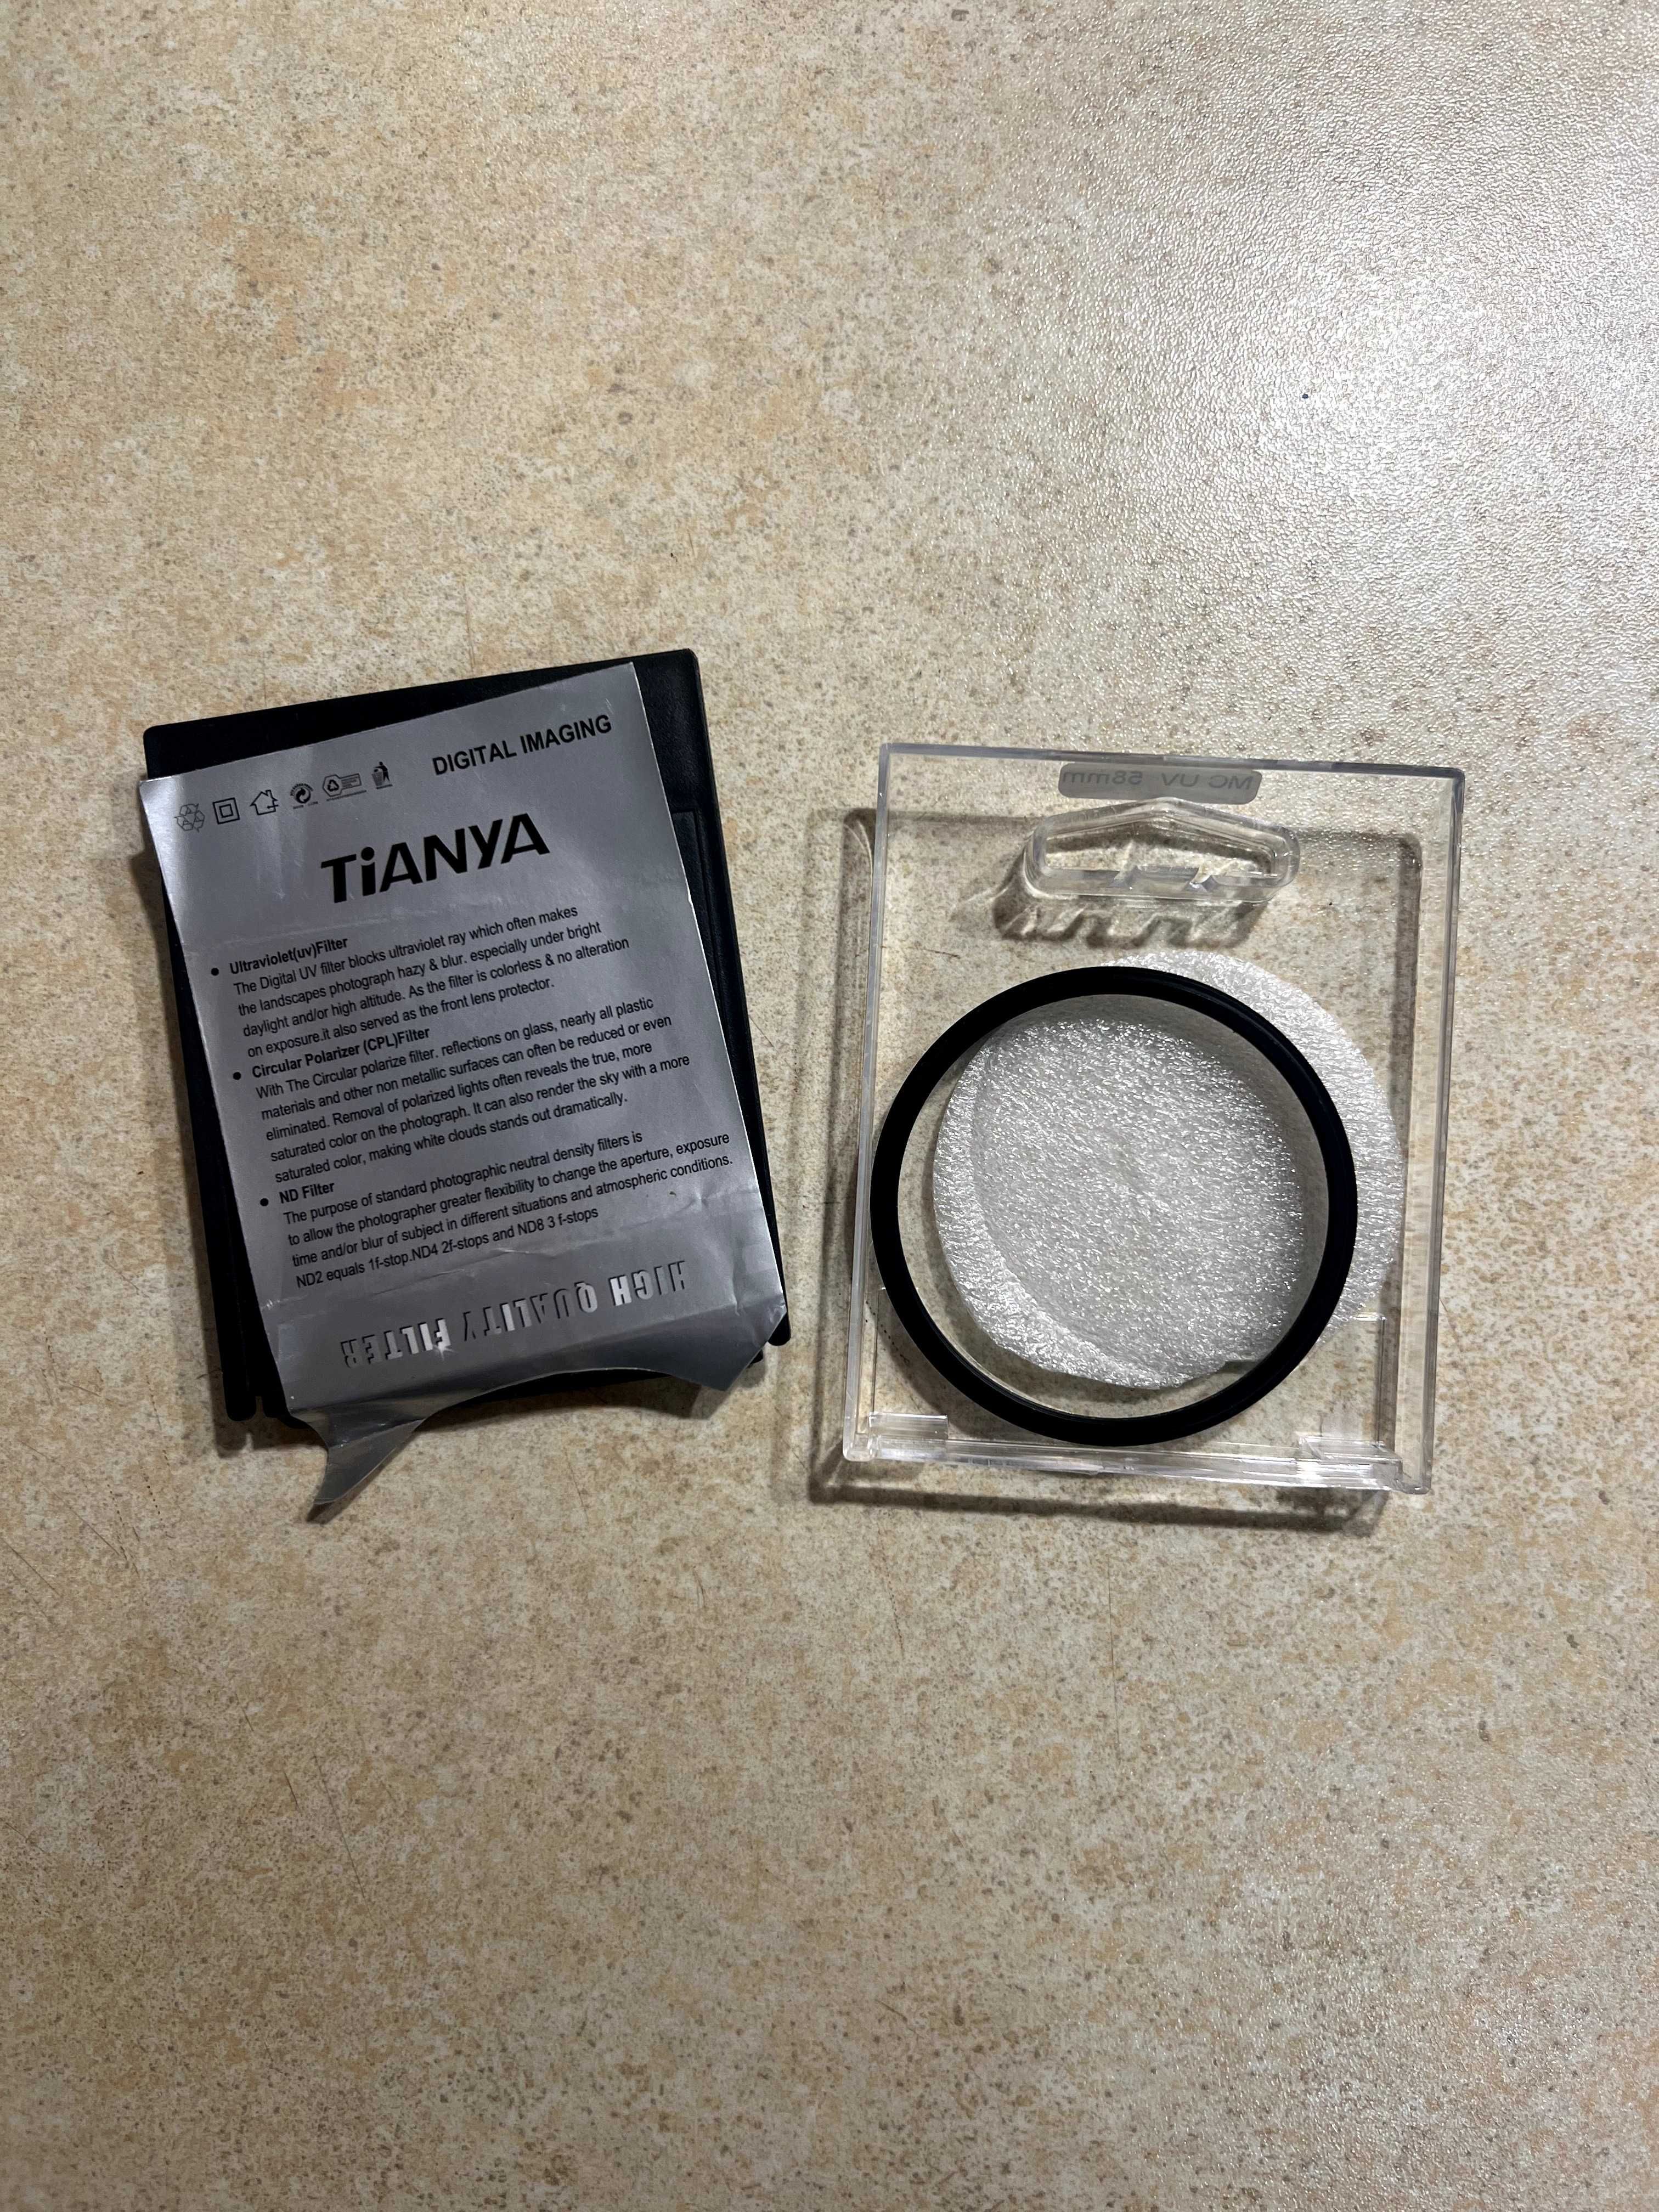 Ультрафиолетовый защитный MC UV cветофильтр Tianya 58 мм